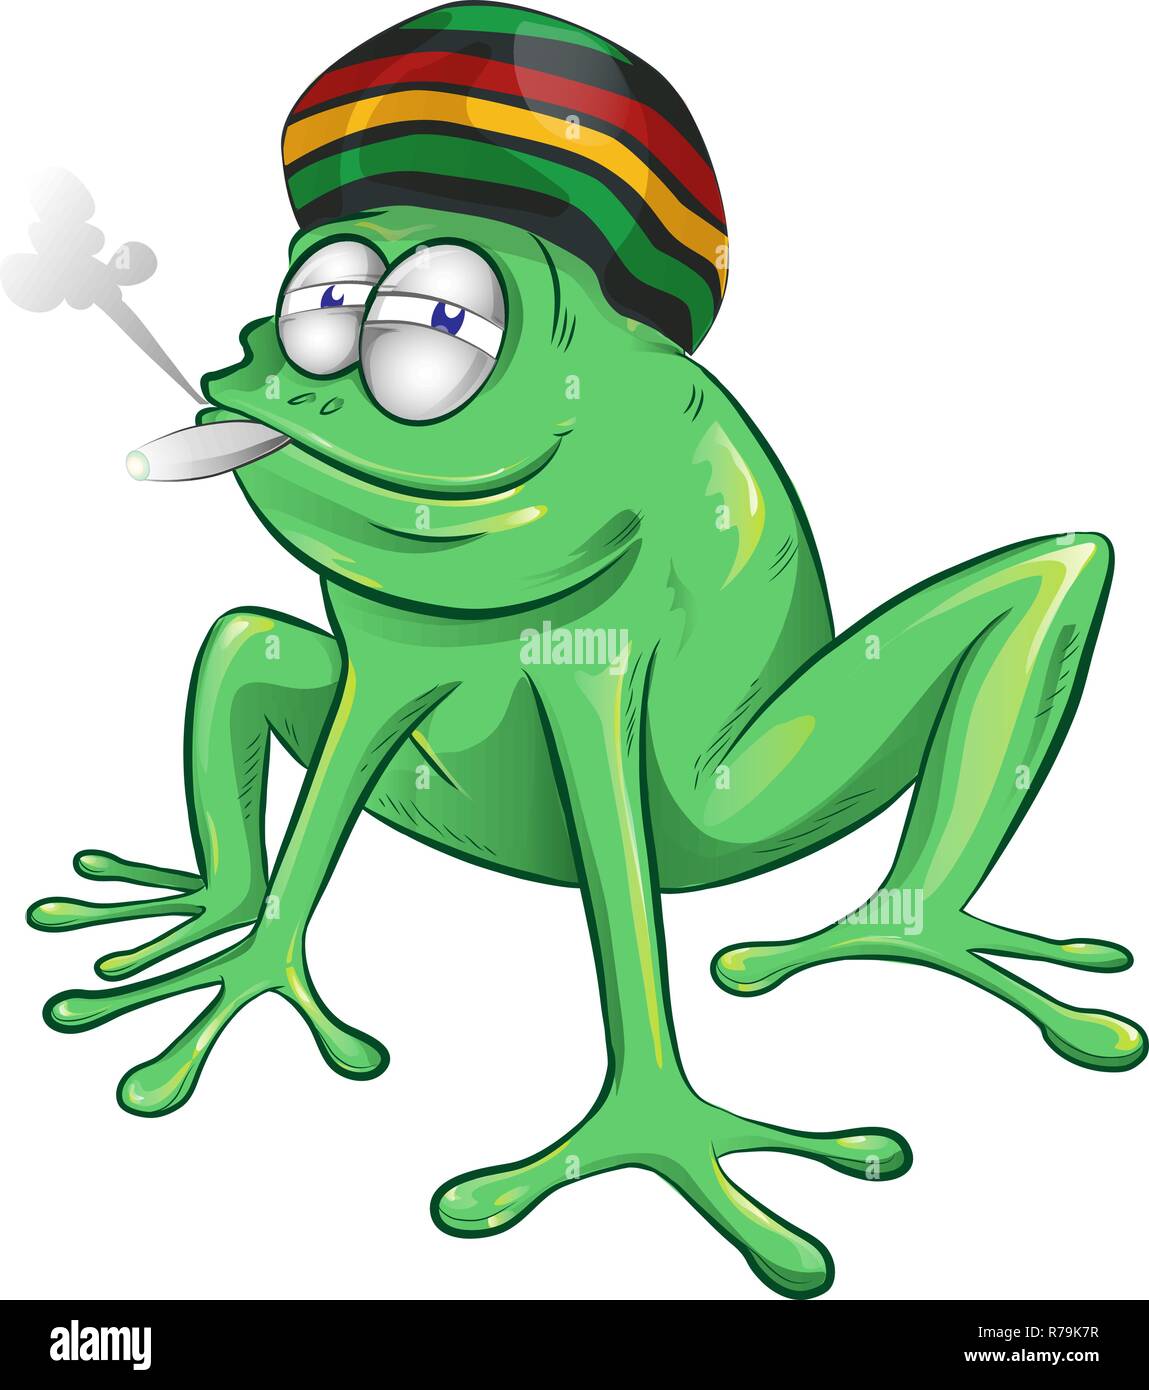 Funny cartoon grenouille jamaïcaine isolé sur fond blanc Illustration de Vecteur